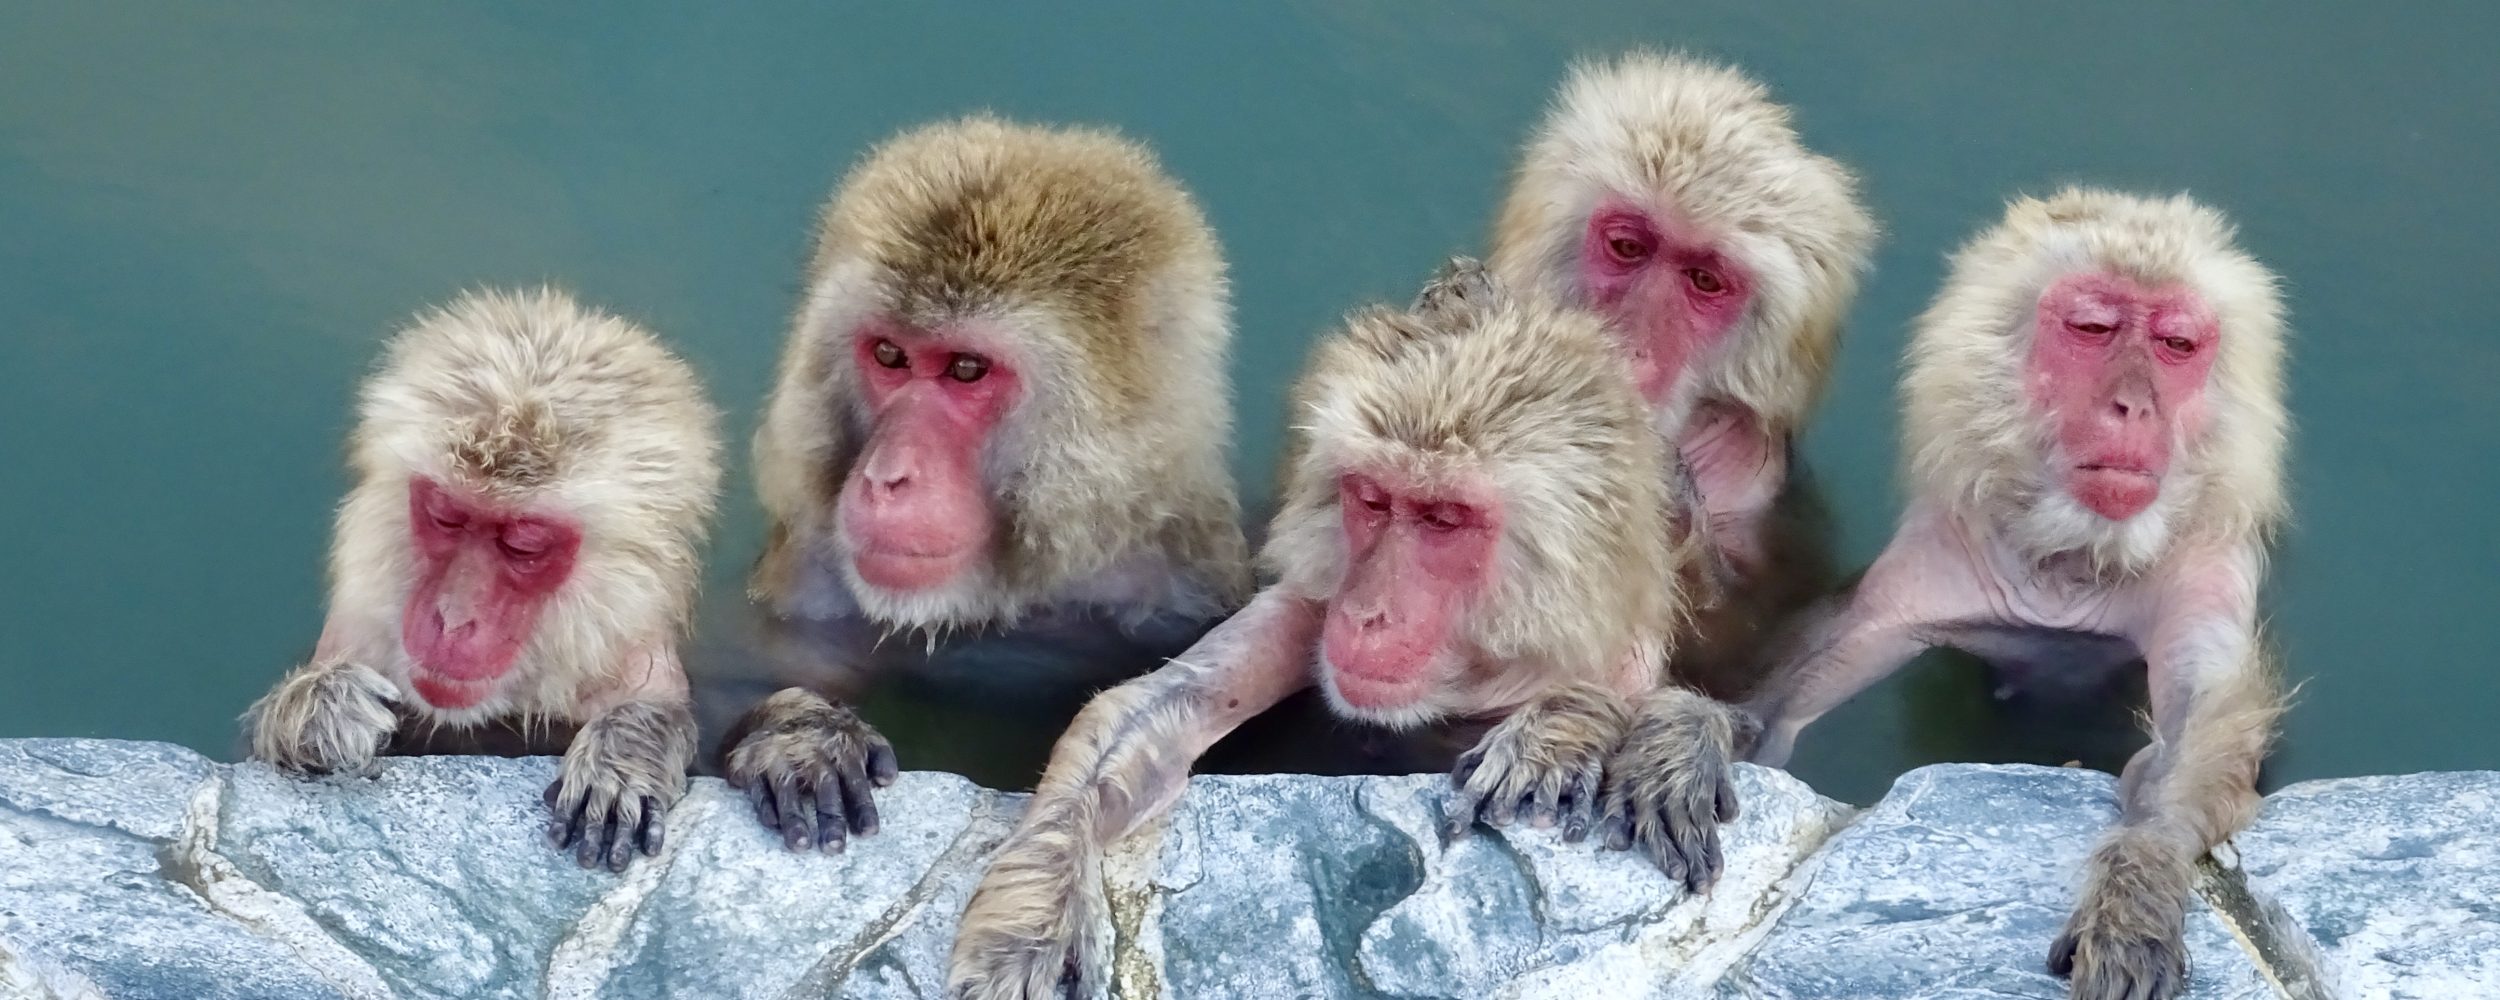 Snow Monkeys in Hakodate, Japan